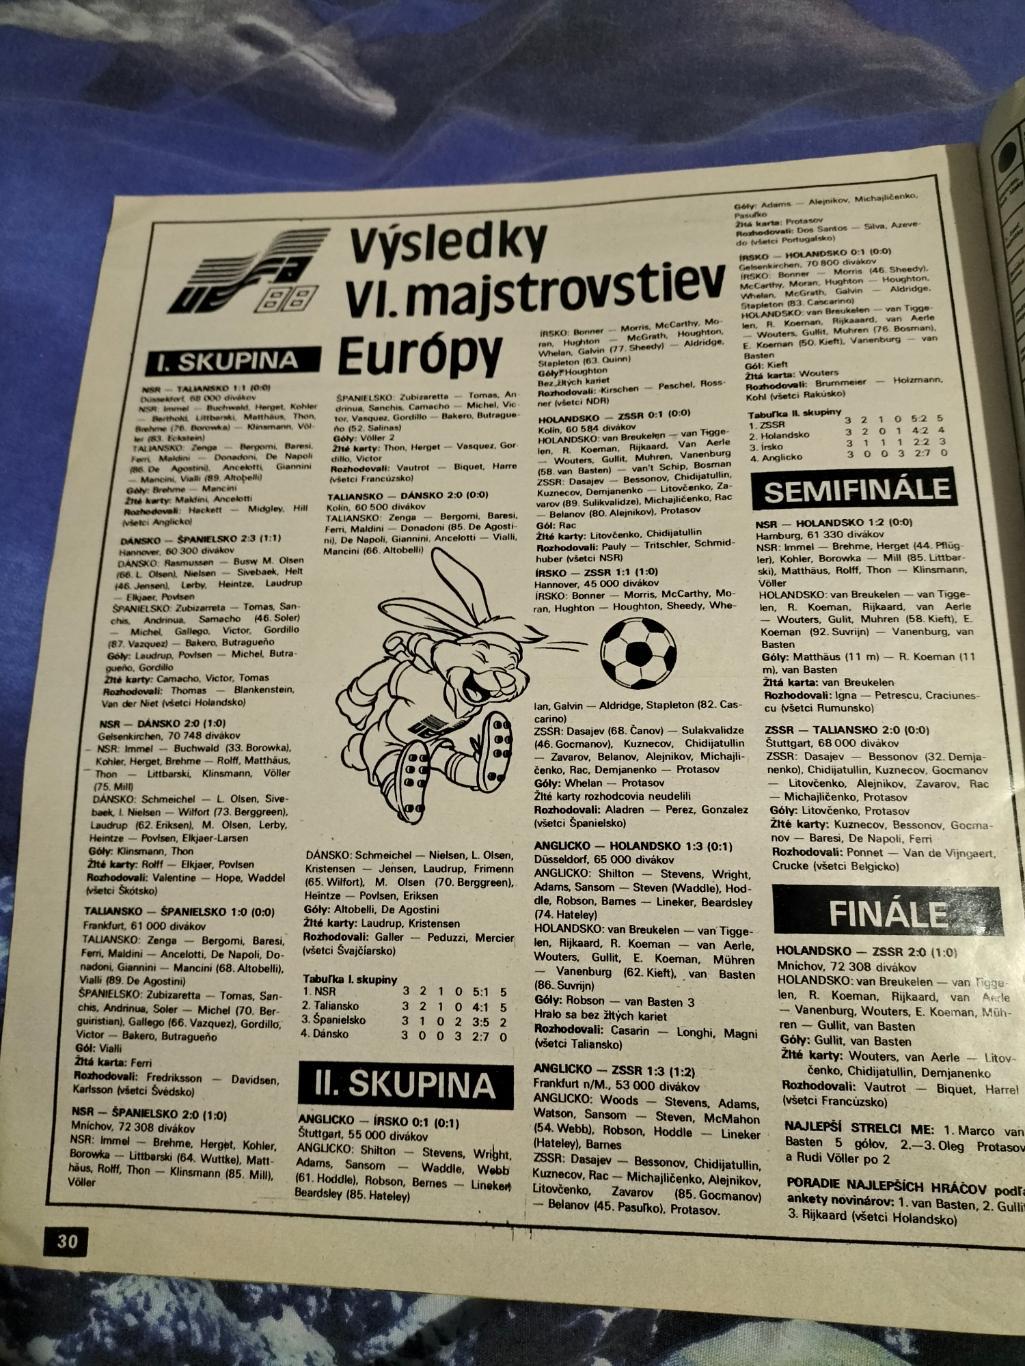 Журнал Start/Старт №30 1988 год(Итоги Чемпионата Европы) 1